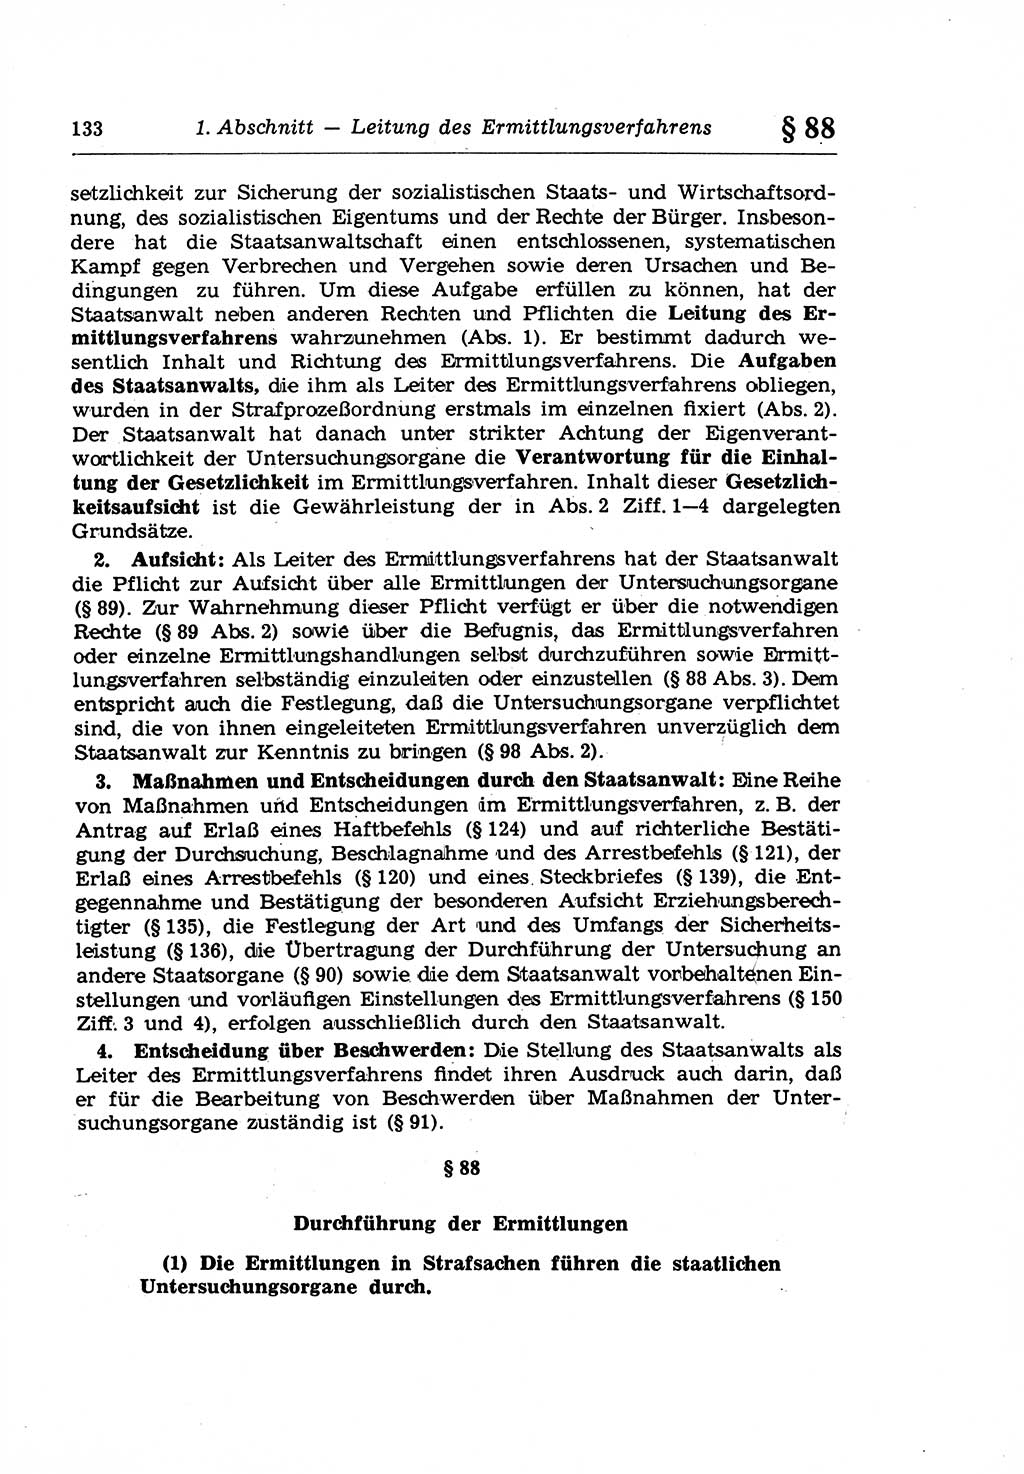 Strafprozeßrecht der DDR (Deutsche Demokratische Republik), Lehrkommentar zur Strafprozeßordnung (StPO) 1968, Seite 133 (Strafprozeßr. DDR Lehrkomm. StPO 19688, S. 133)